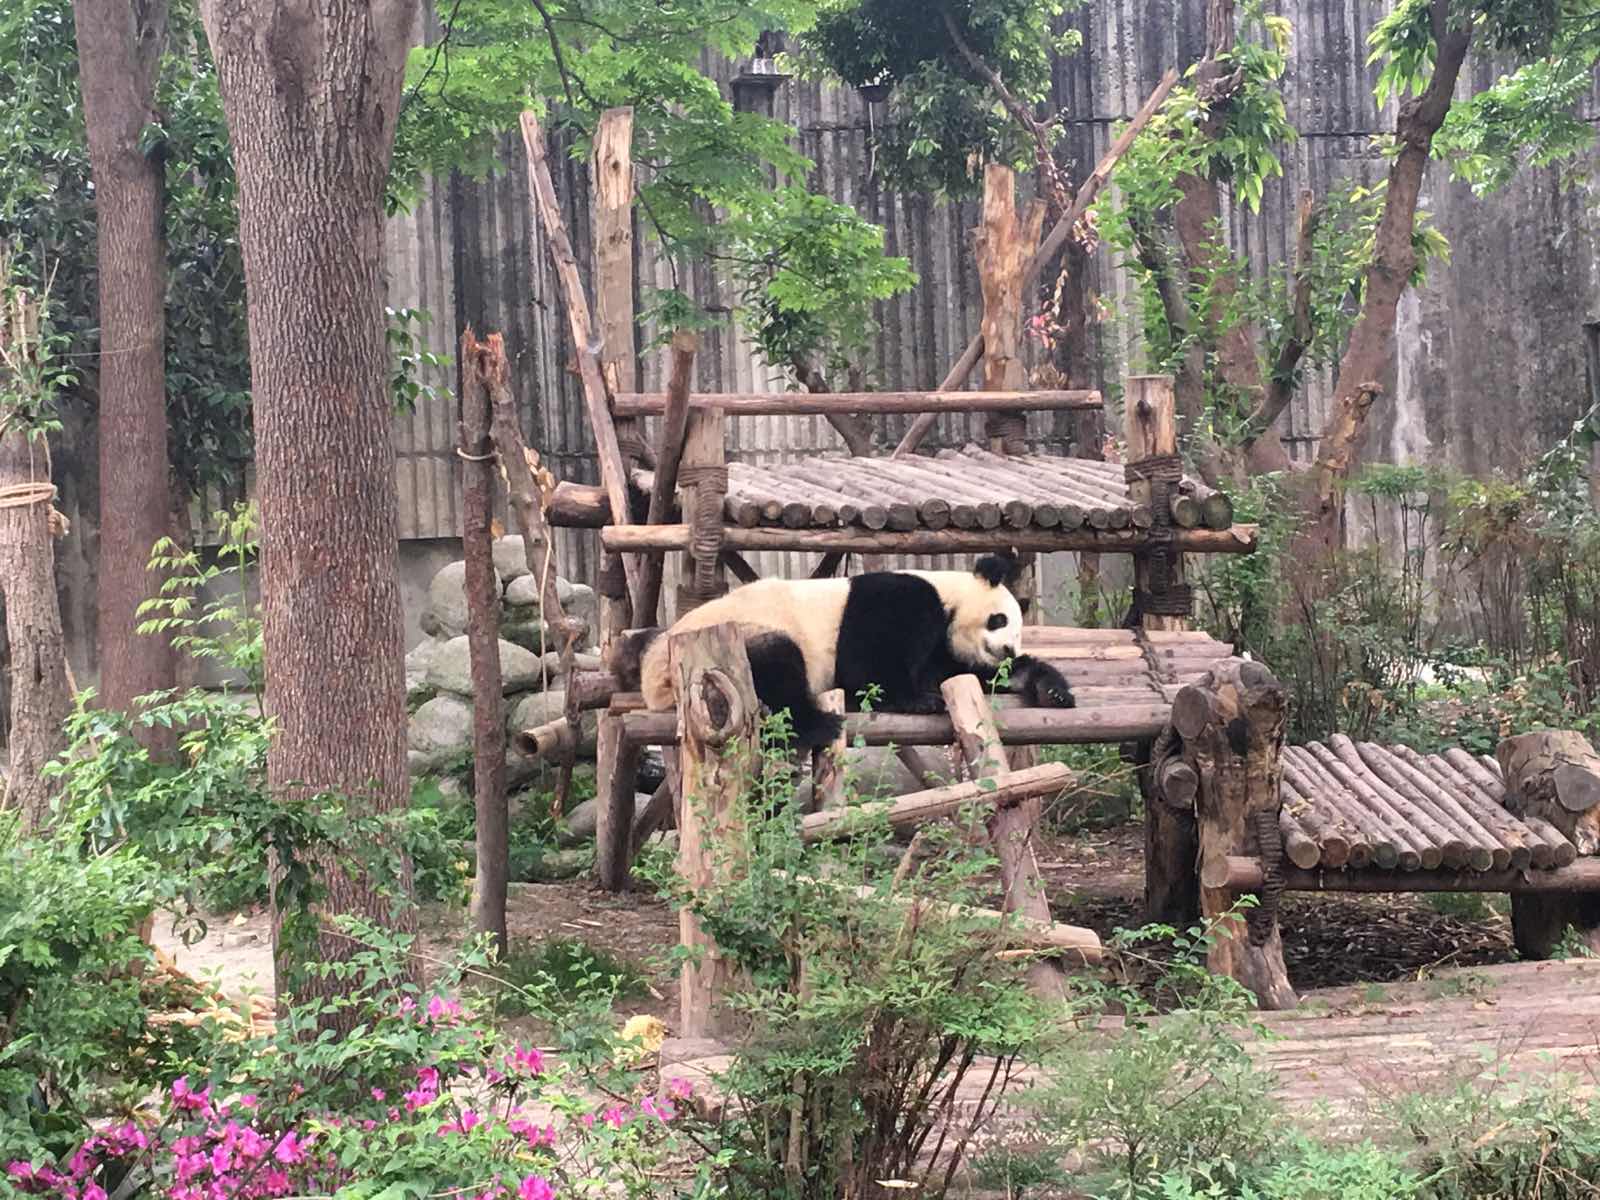 熊猫宝宝们吃饱睡睡饱吃，真的非常萌萌哒。从市区开车过去大概一个小时左右